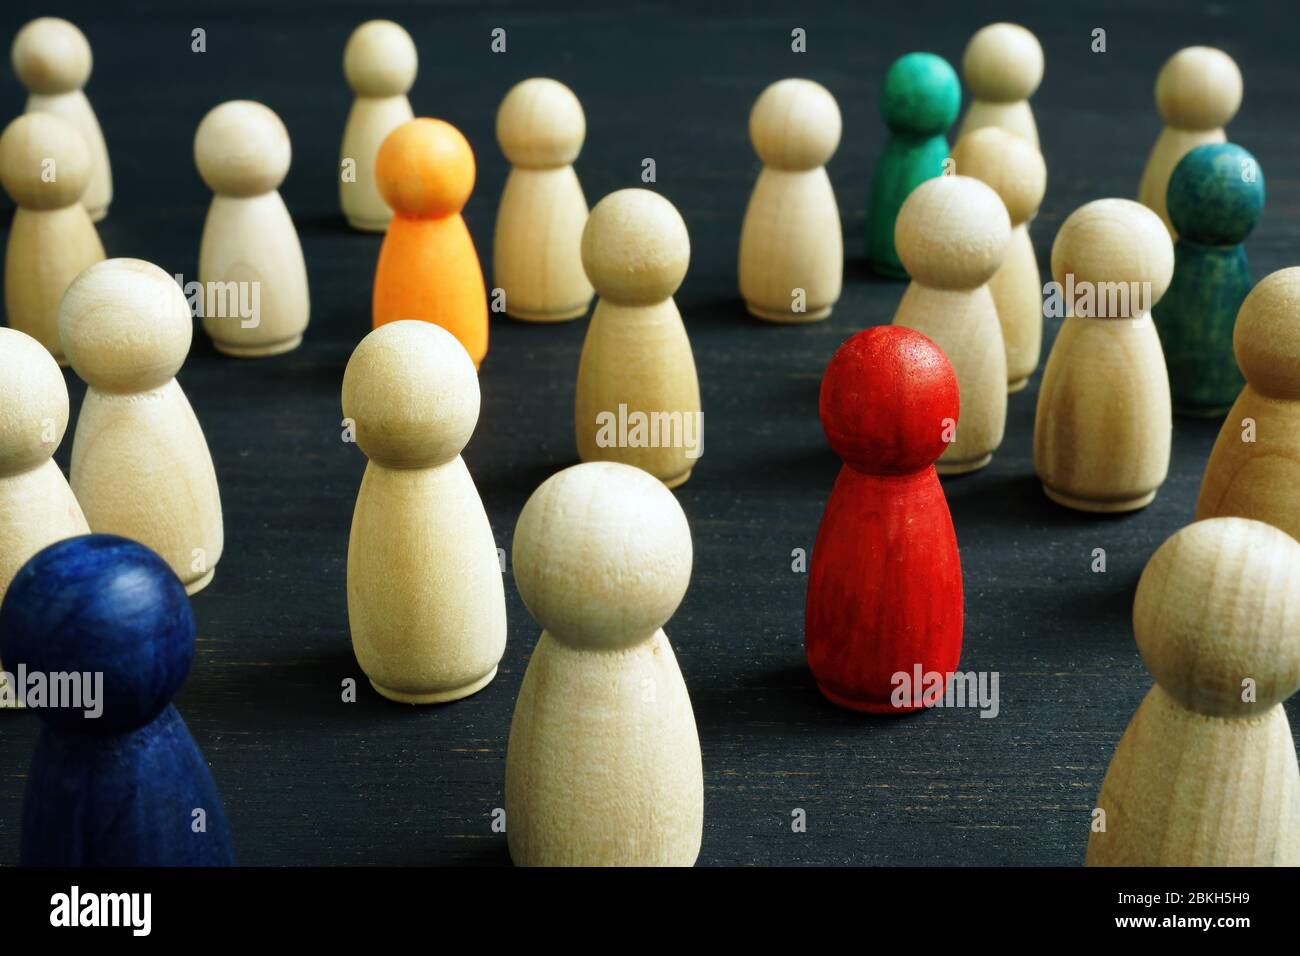 Piccole figure in legno. Concetto di inclusione sociale, diversità e uguaglianza. Foto Stock